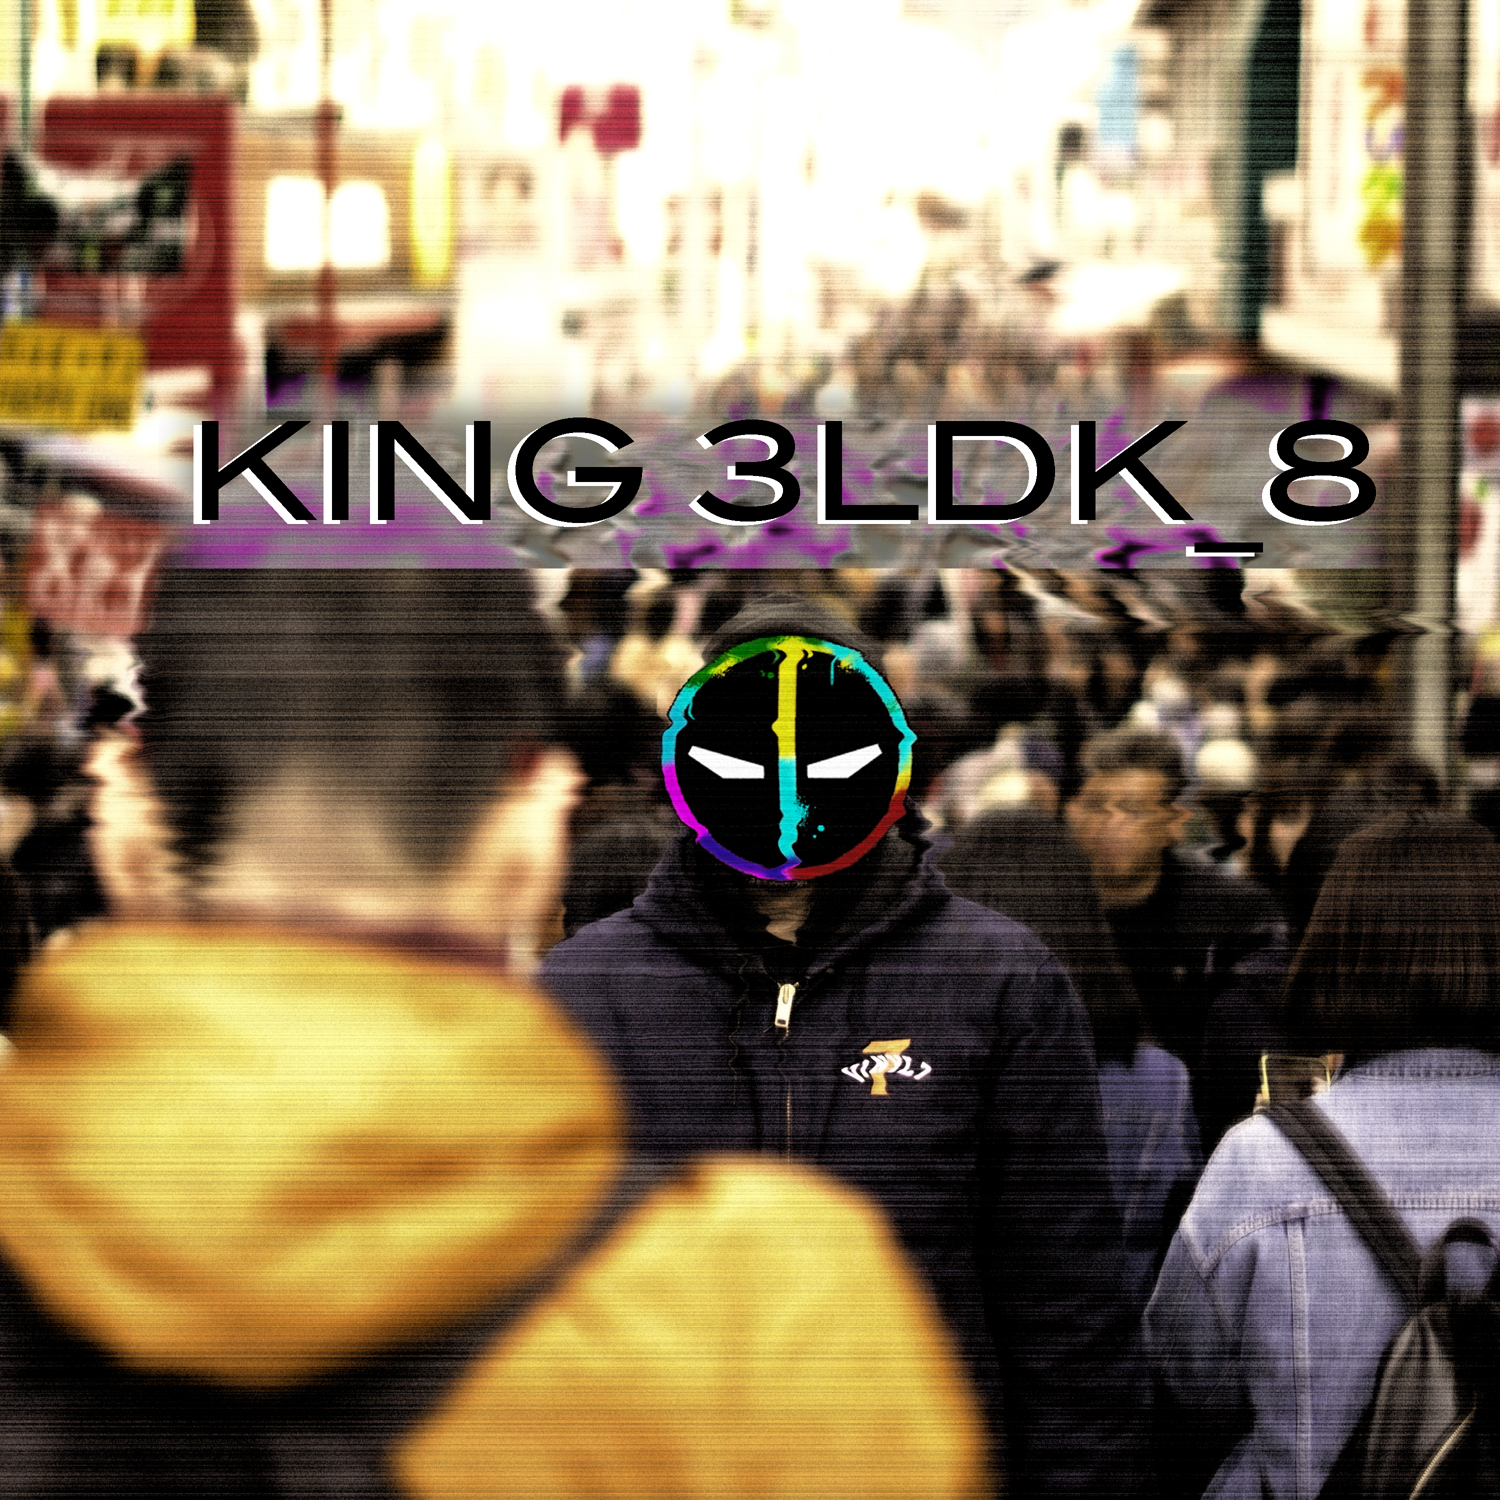 KING 3LDK 'KING3LDK_8'